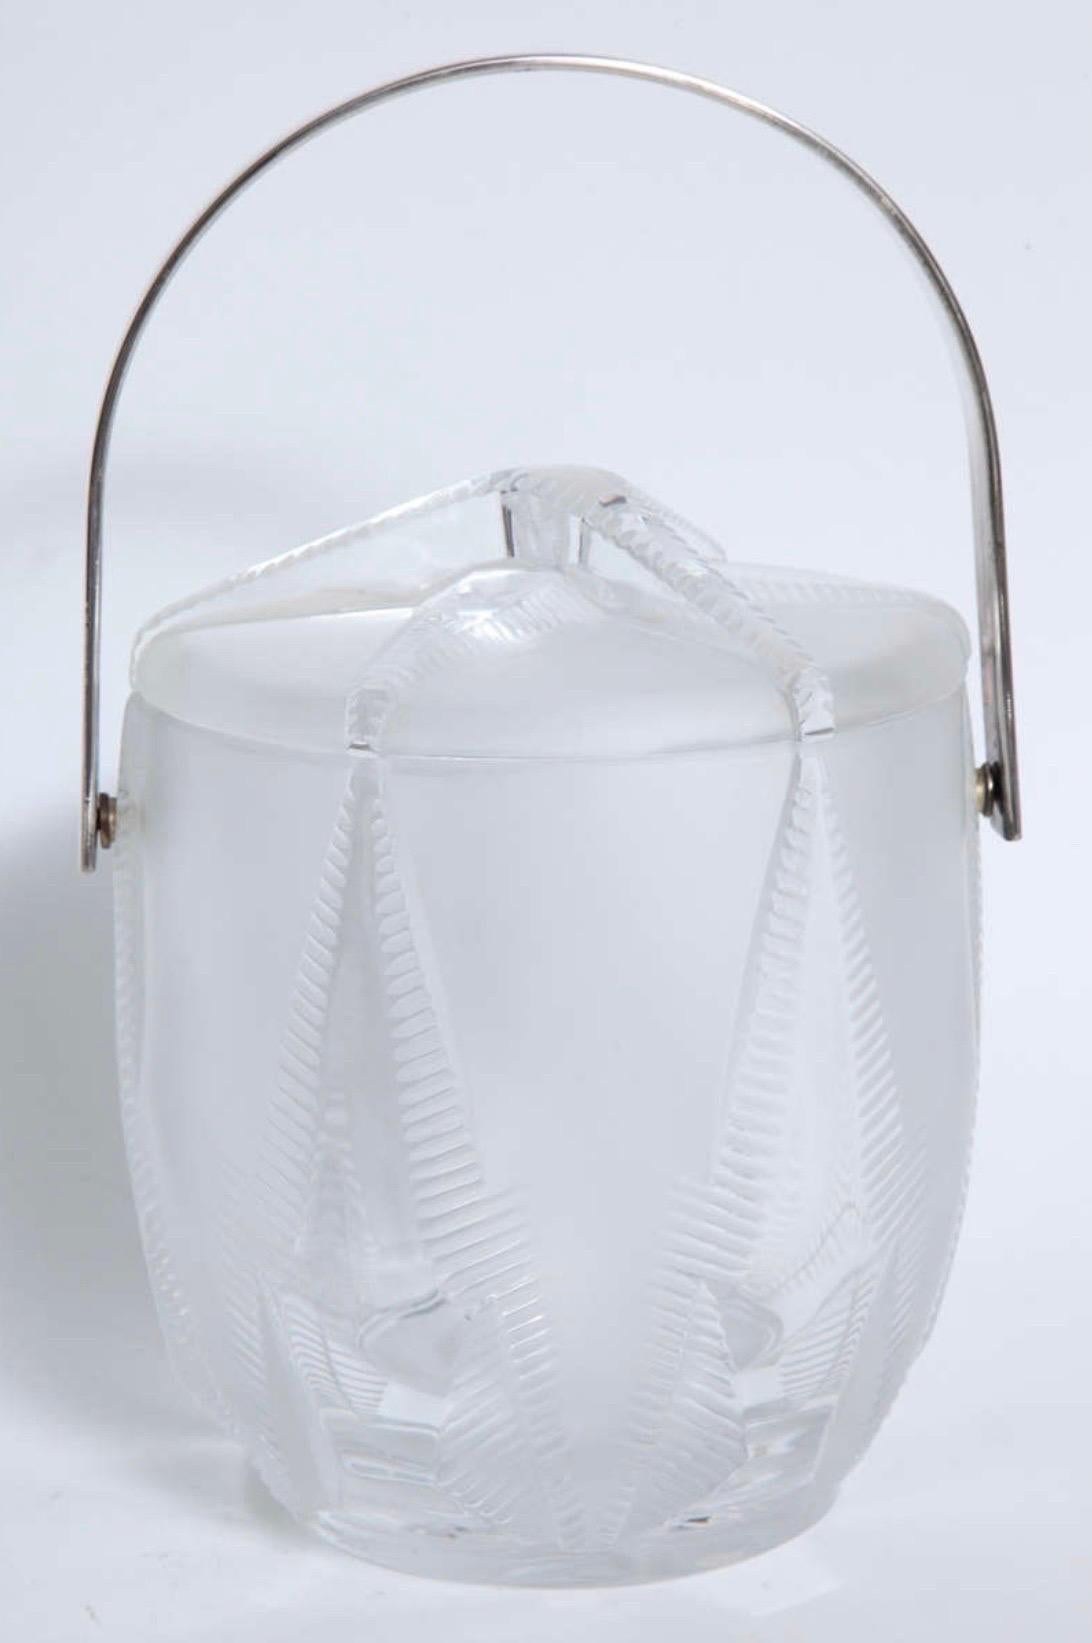 Ein fantastischer Thermidor Lalique Eiskübel mit Deckel, vernickeltem Griff und erhabenem Seesternmotiv. Die Auskleidung ist herausnehmbar, ein Glasbehälter kann als Sekt- oder Weinkübel dienen.
Signiert Lalique Frankreich